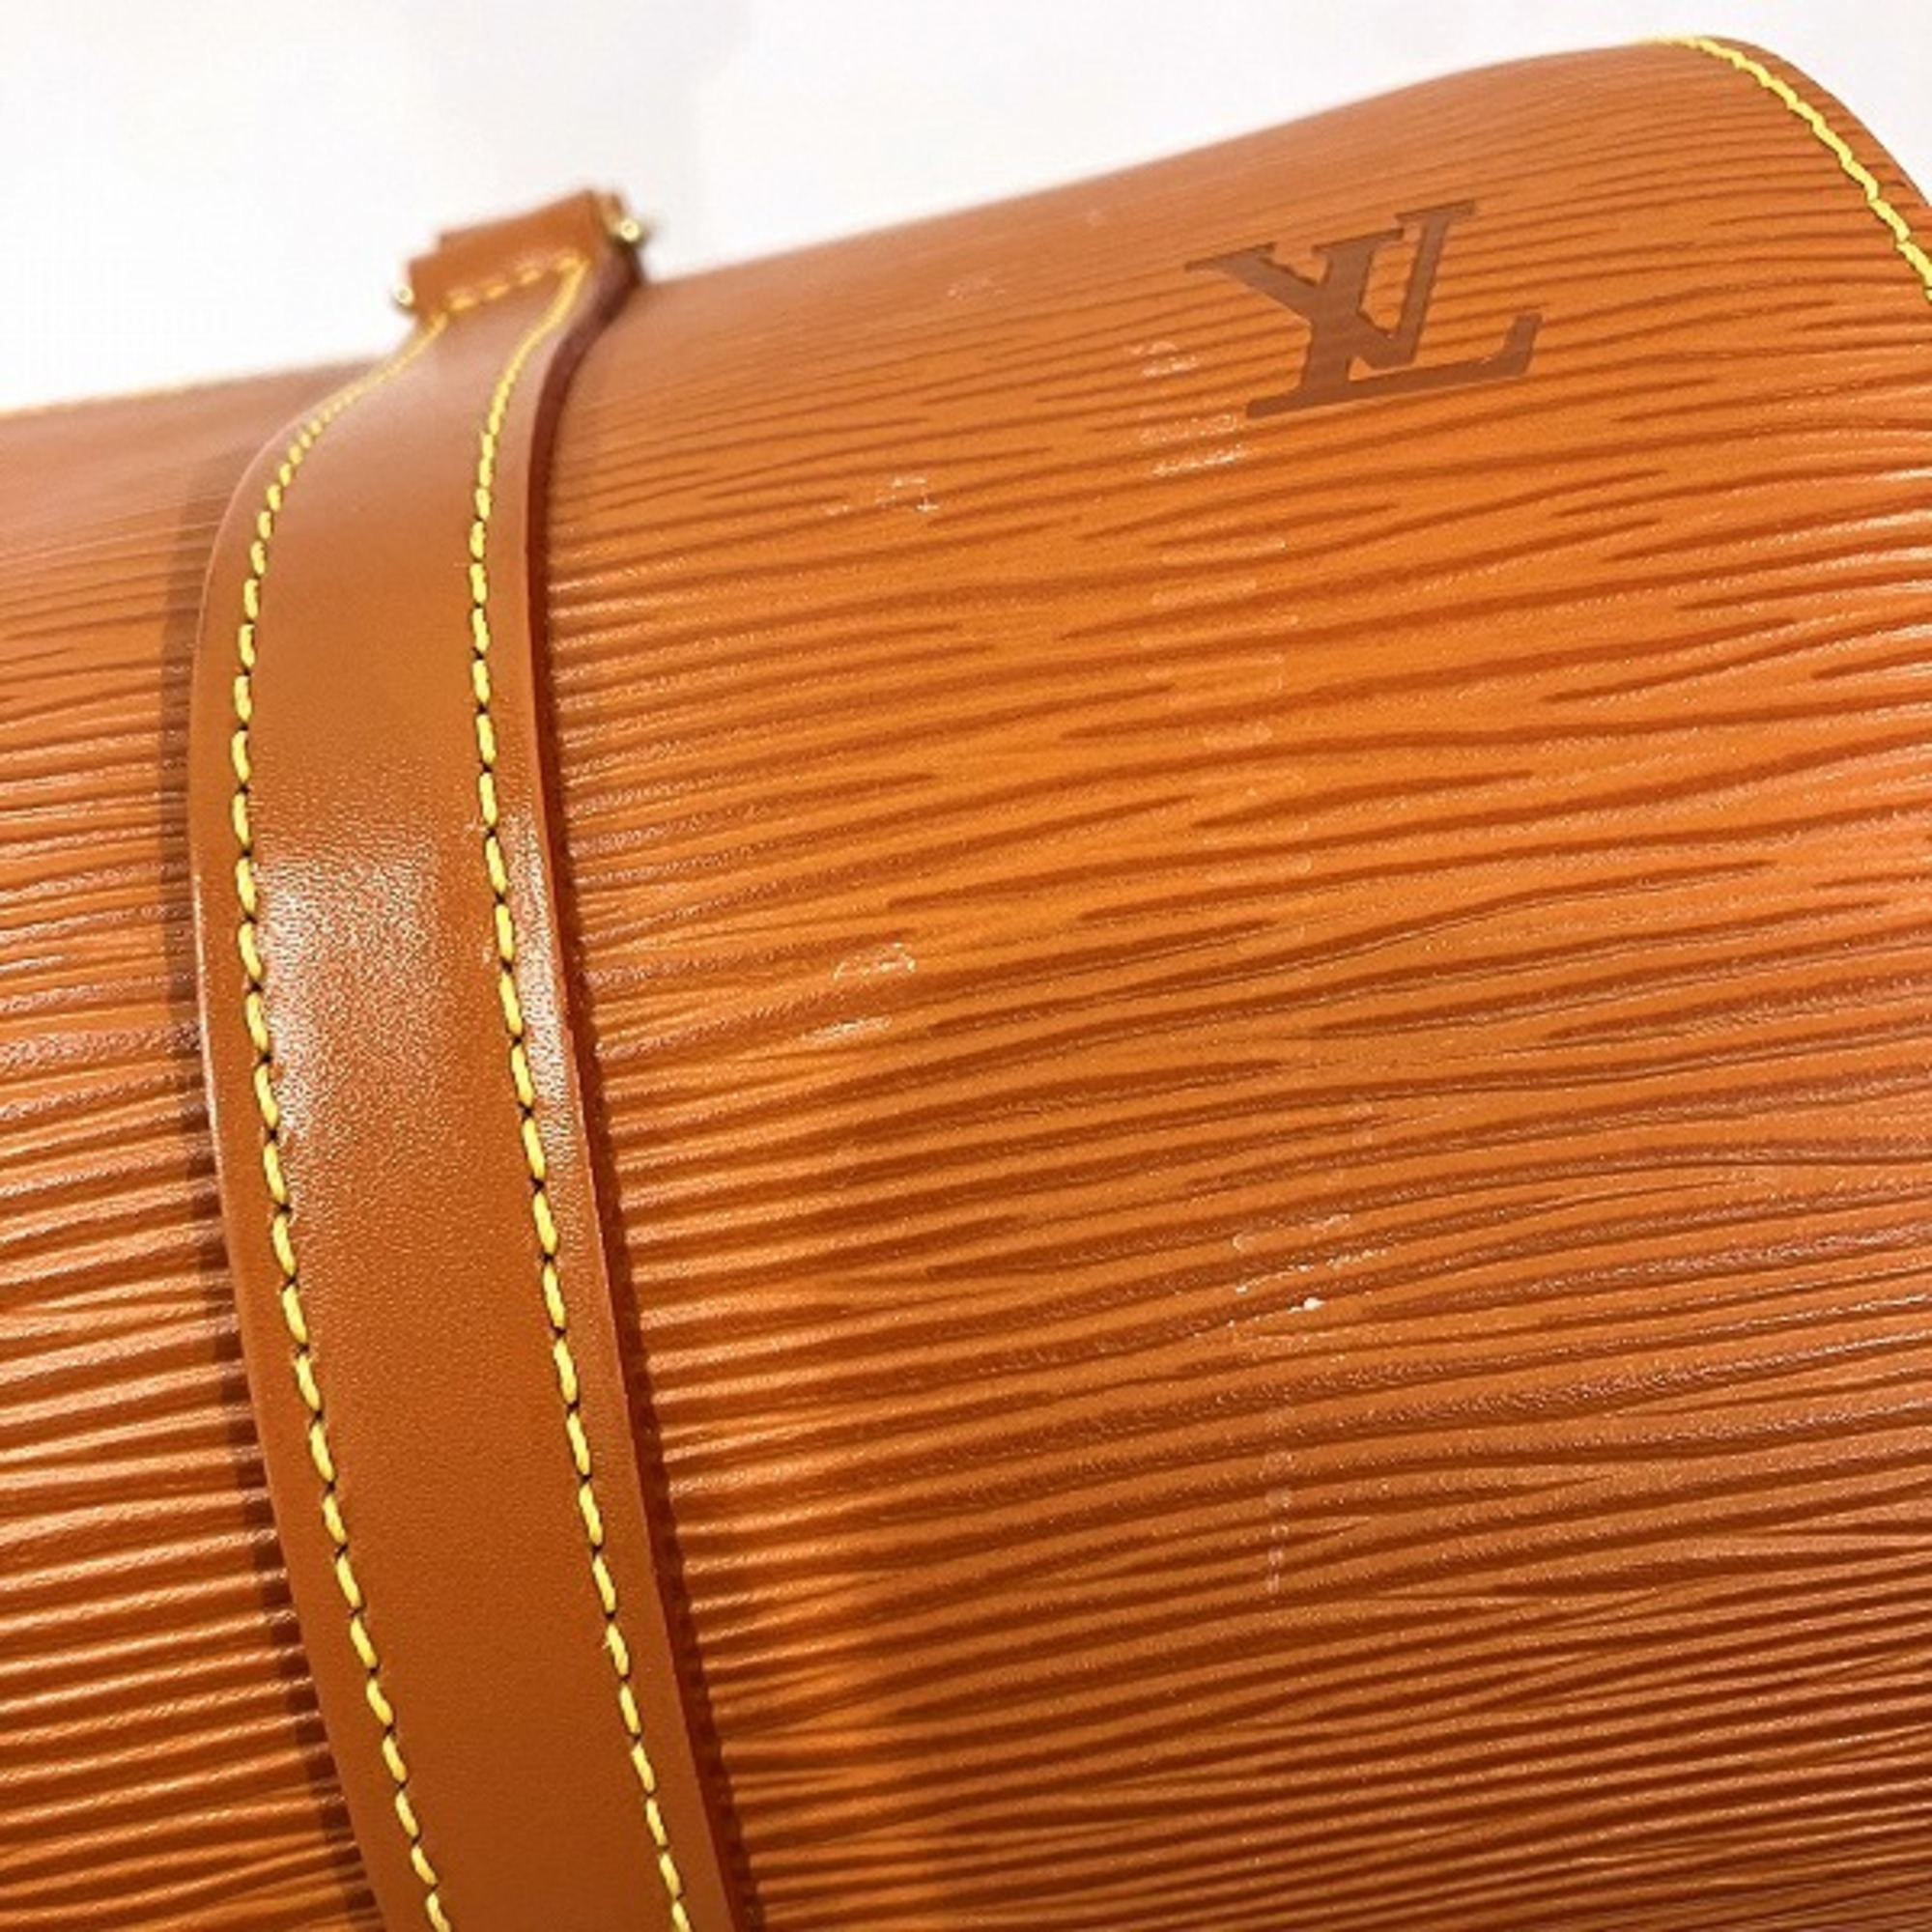 Louis Vuitton Epi Souflot M52228 Bag Handbag Ladies